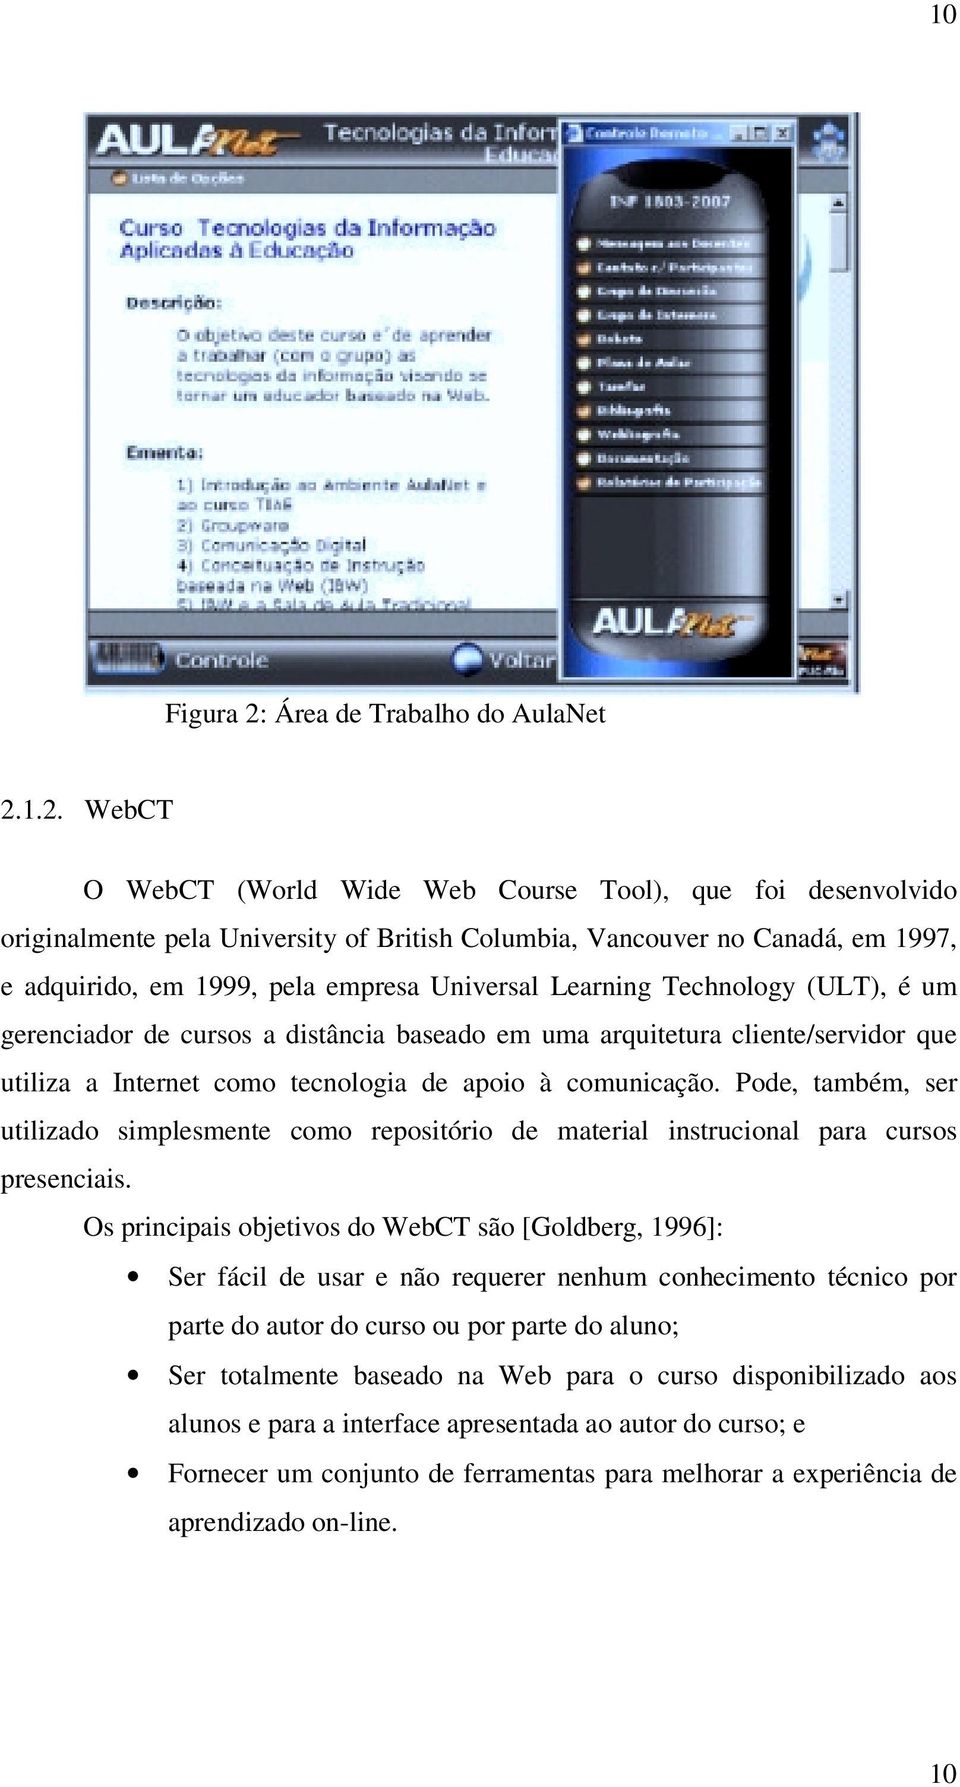 1.2. WebCT O WebCT (World Wide Web Course Tool), que foi desenvolvido originalmente pela University of British Columbia, Vancouver no Canadá, em 1997, e adquirido, em 1999, pela empresa Universal